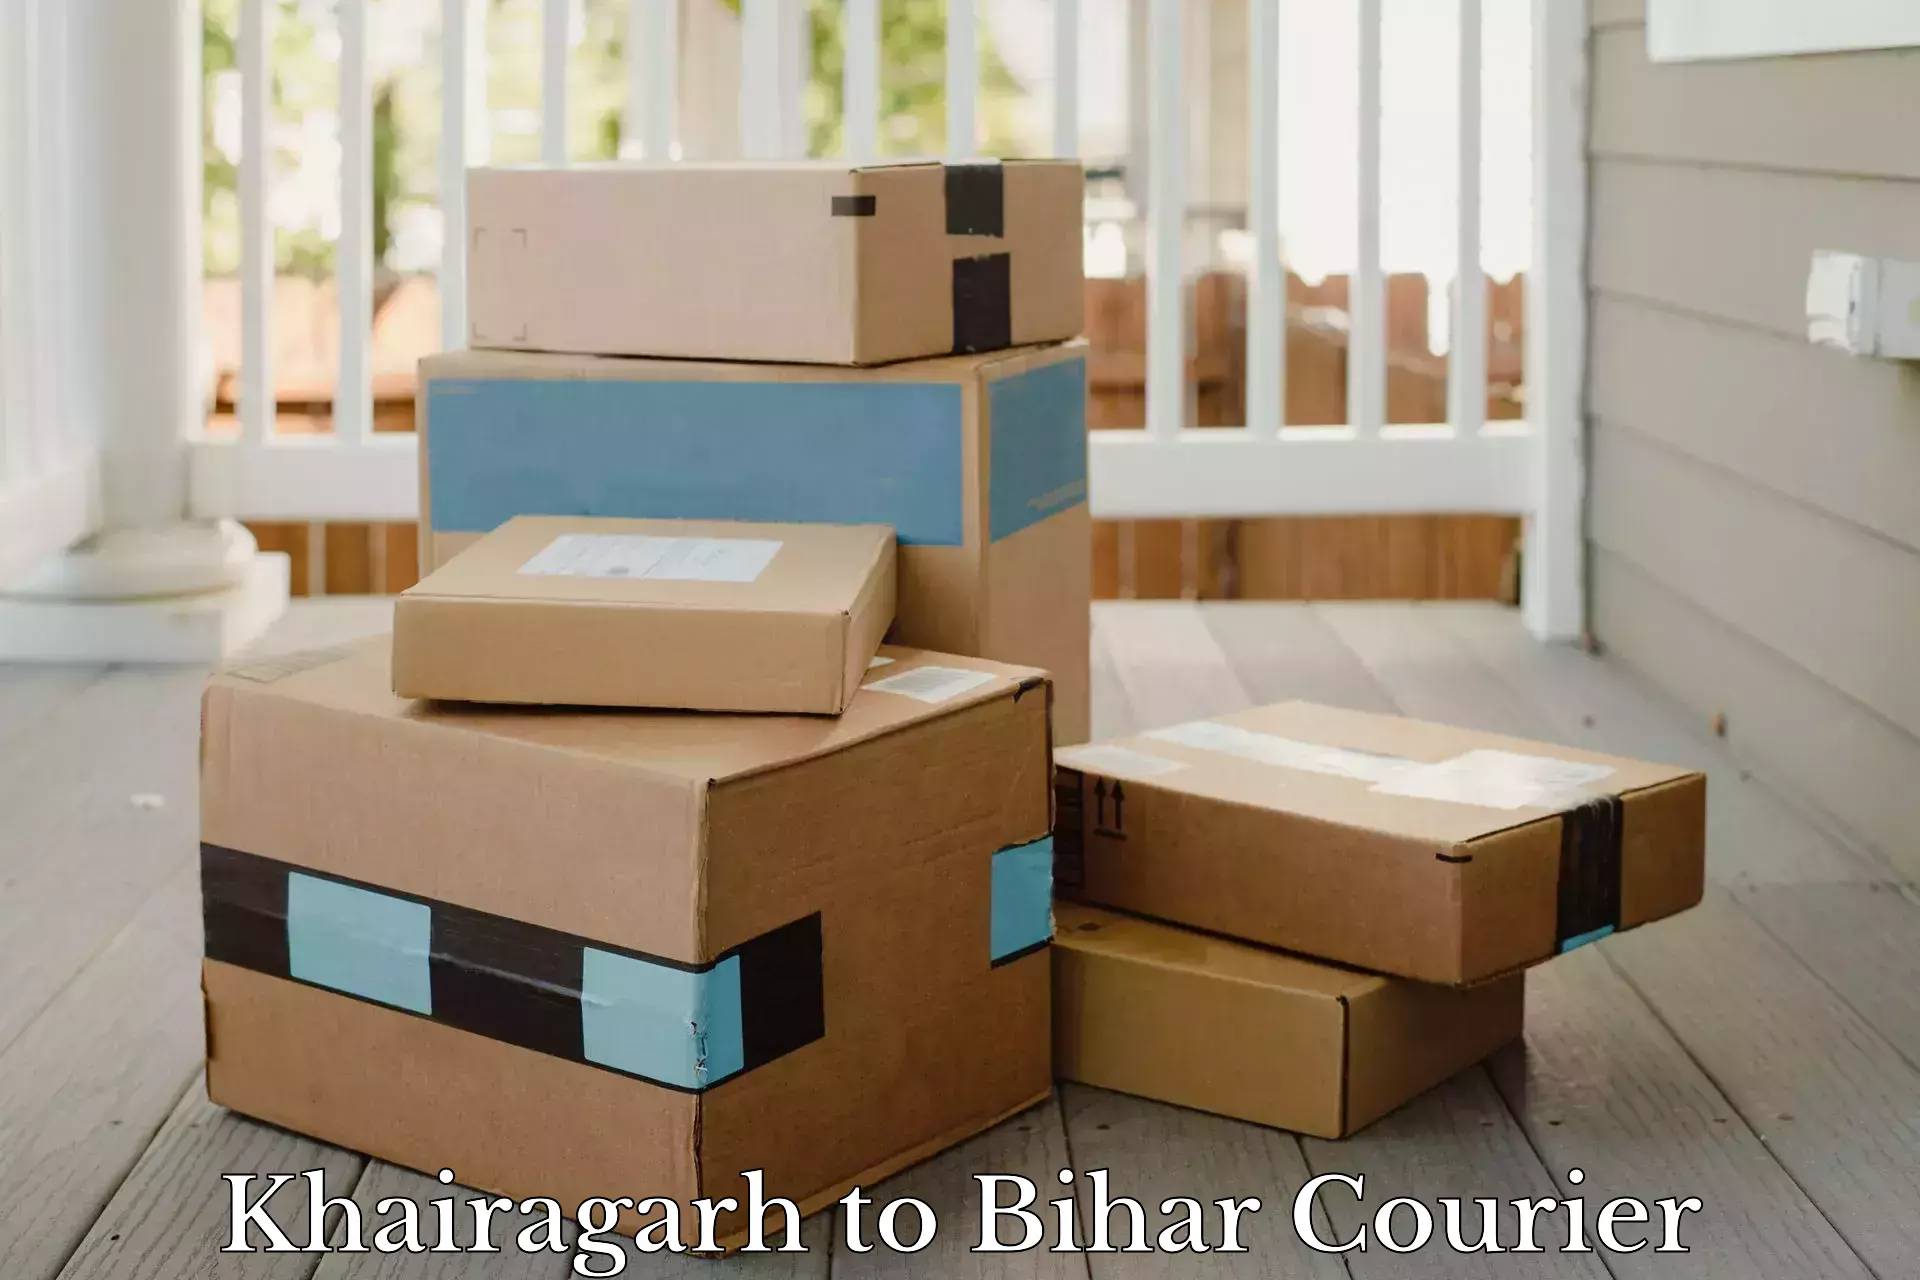 Efficient order fulfillment Khairagarh to Bihar